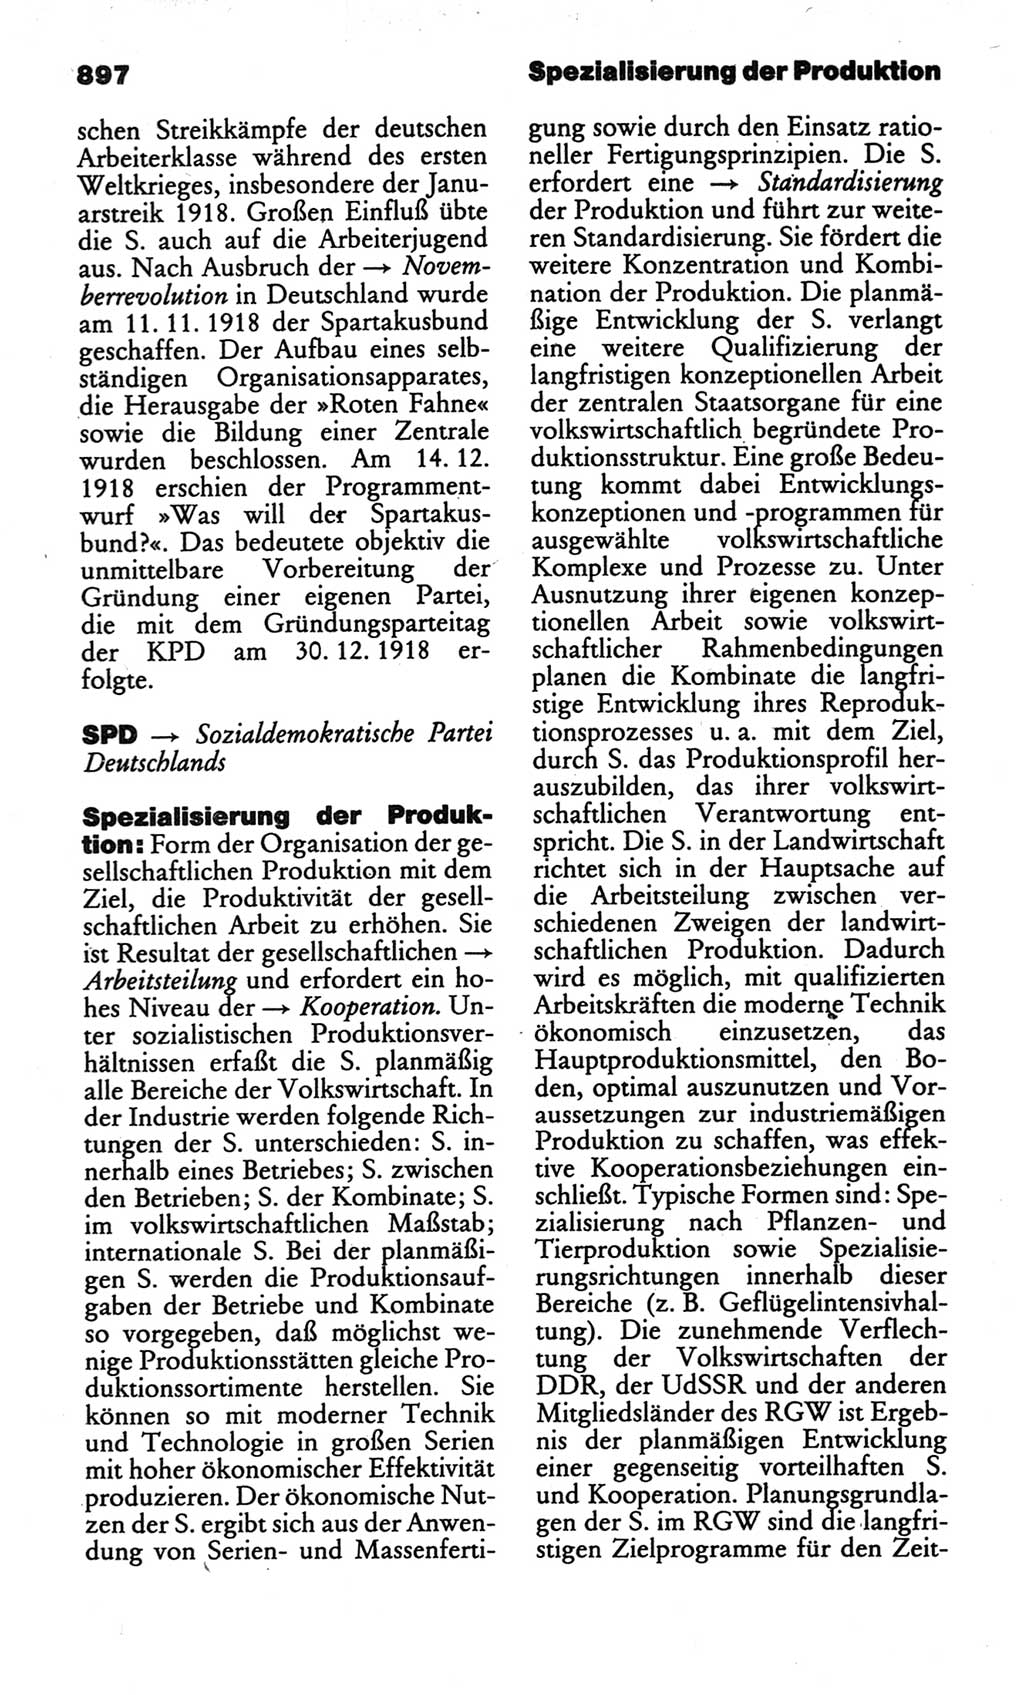 Kleines politisches Wörterbuch [Deutsche Demokratische Republik (DDR)] 1986, Seite 897 (Kl. pol. Wb. DDR 1986, S. 897)